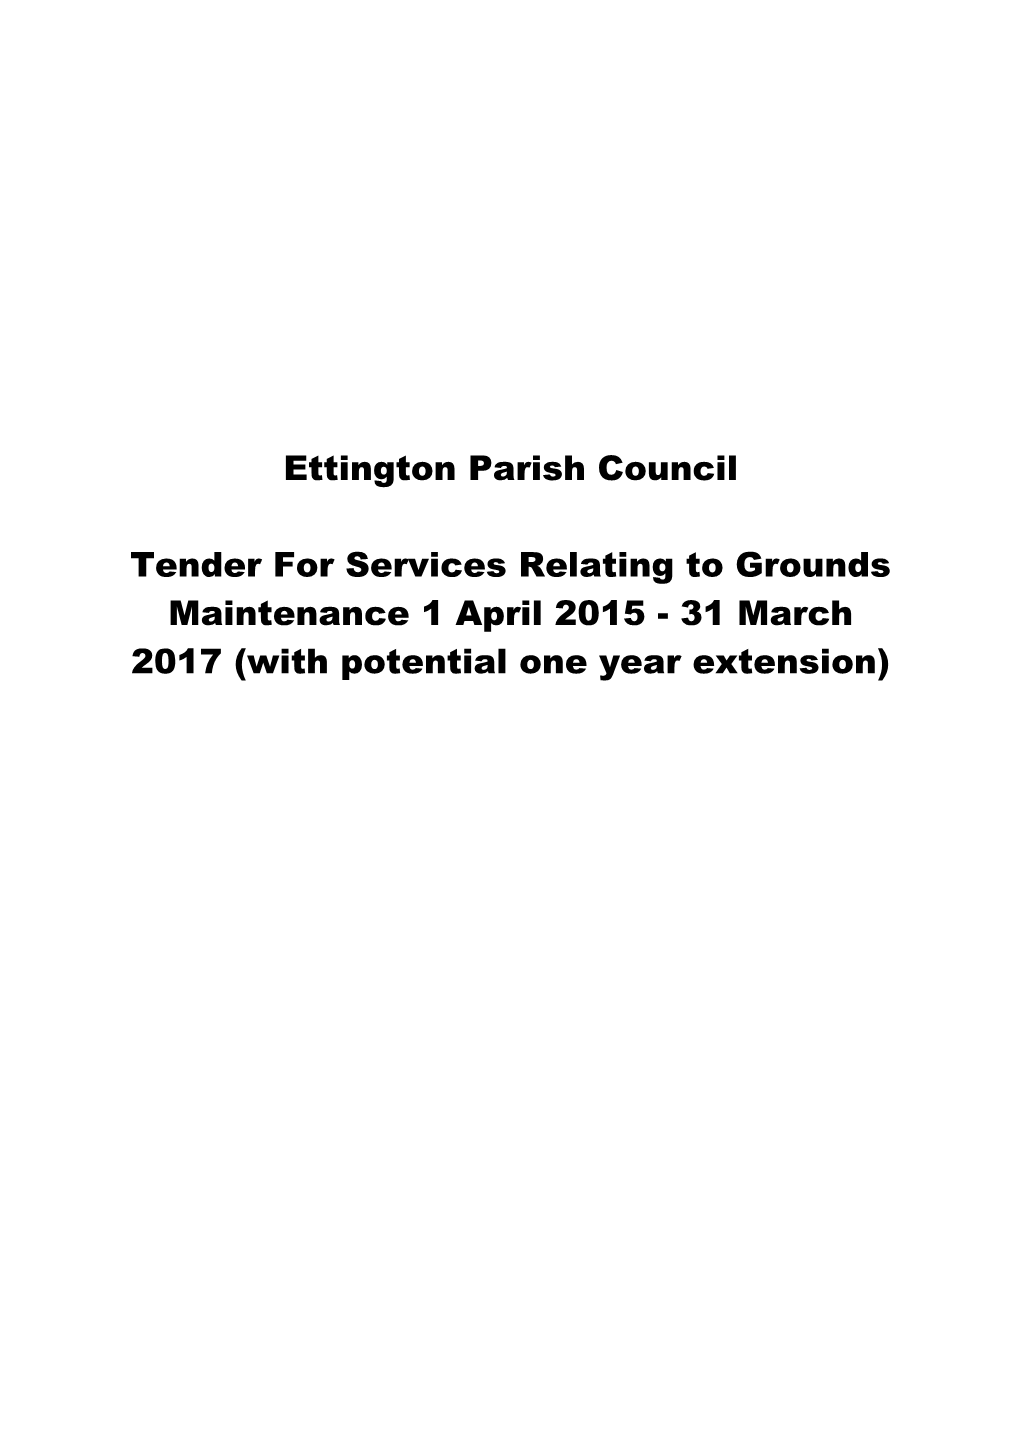 Ettington Parish Council Grounds Maintenance